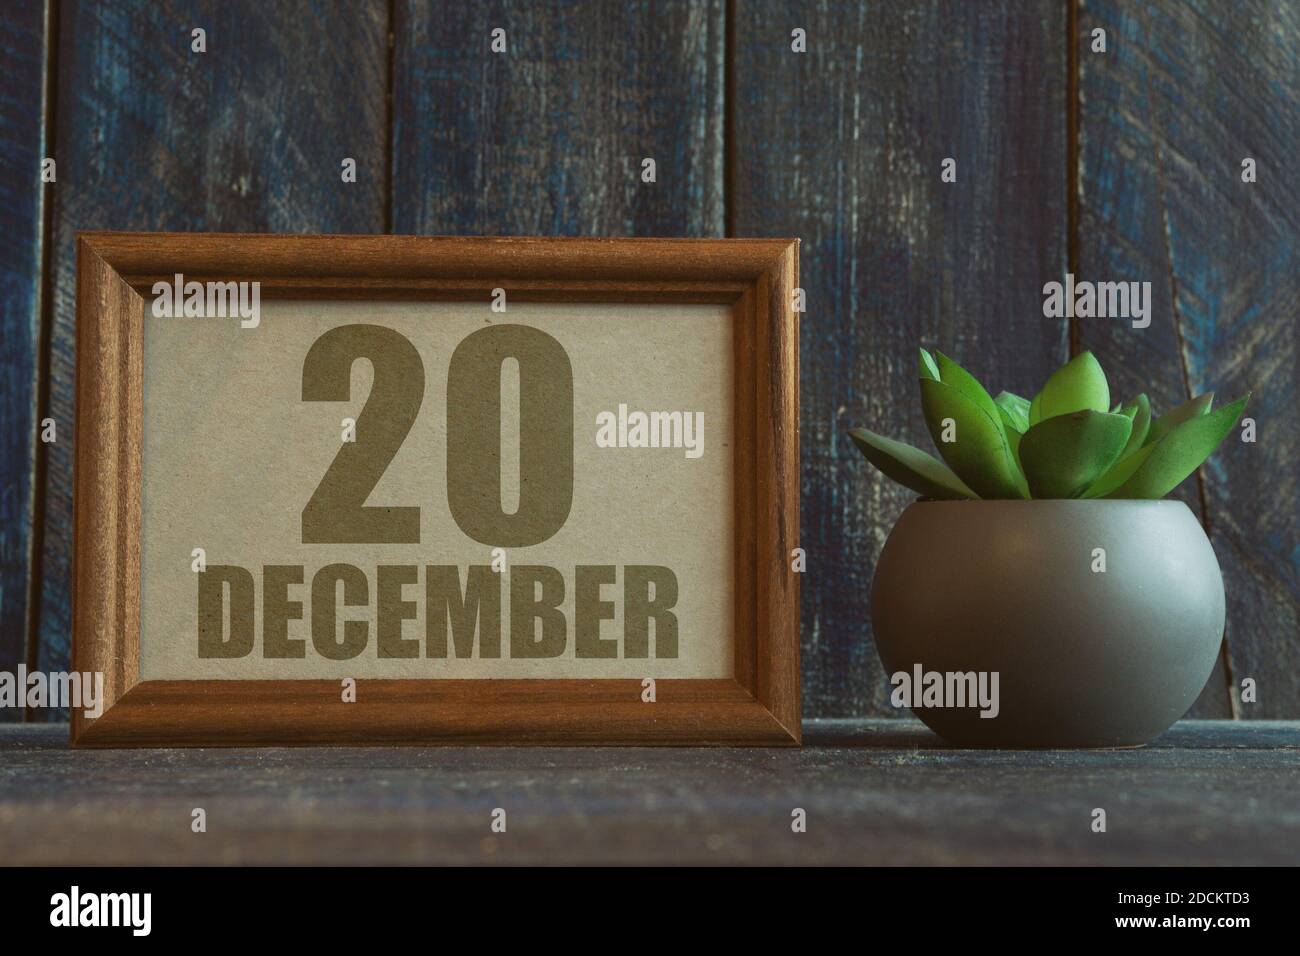 dezember. Tag 20 des Monats, Datum im Rahmen neben Sukkulente auf Holzhintergrund Wintermonat, Tag des Jahres Konzept. Stockfoto